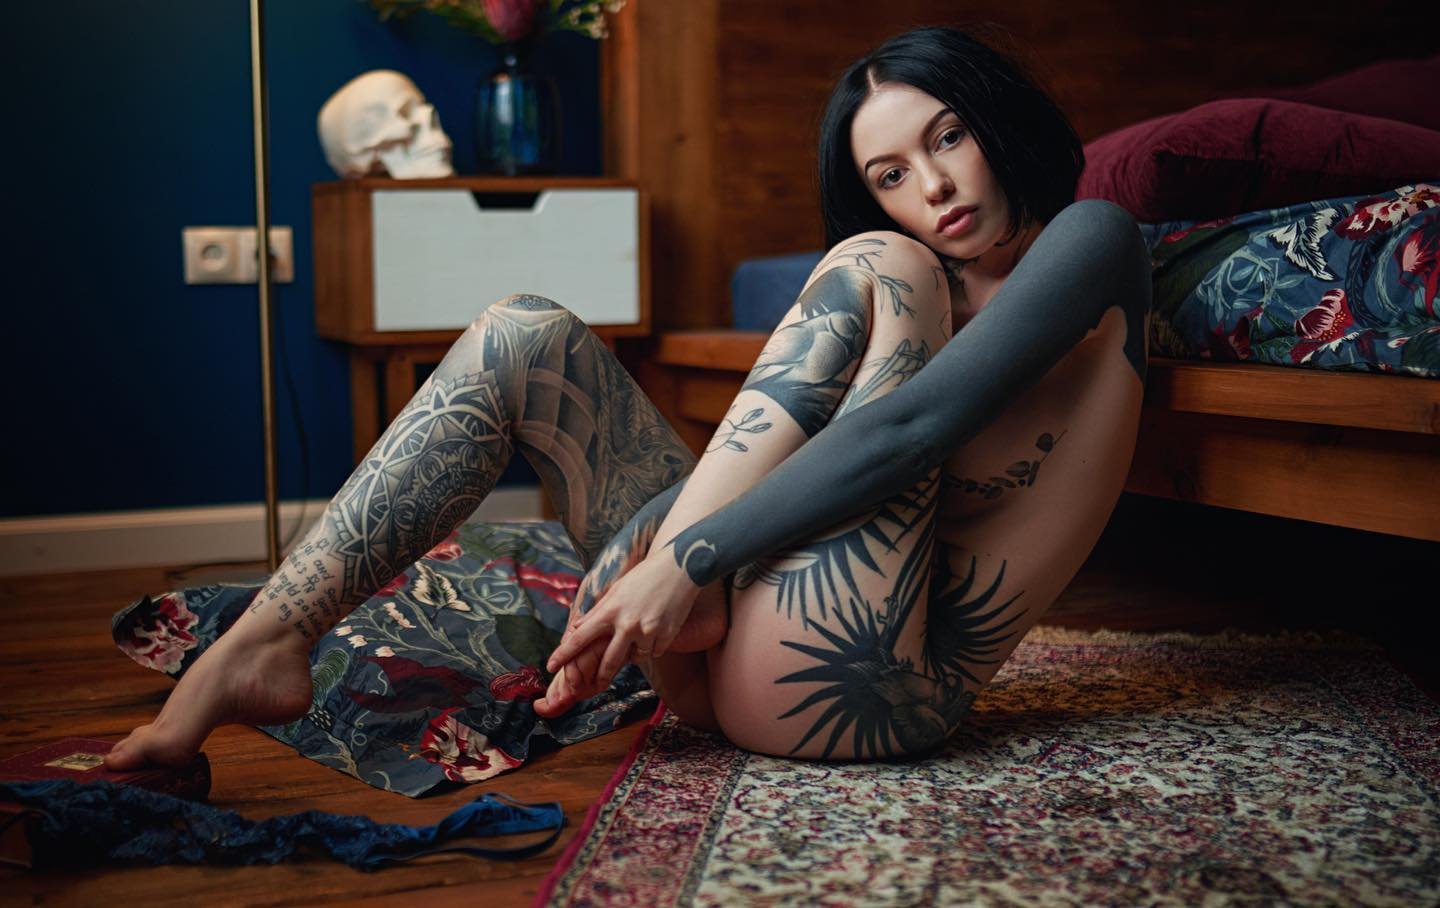 Sergey Fat Fotógrafo - Modelo tatuada posando seminua no chão